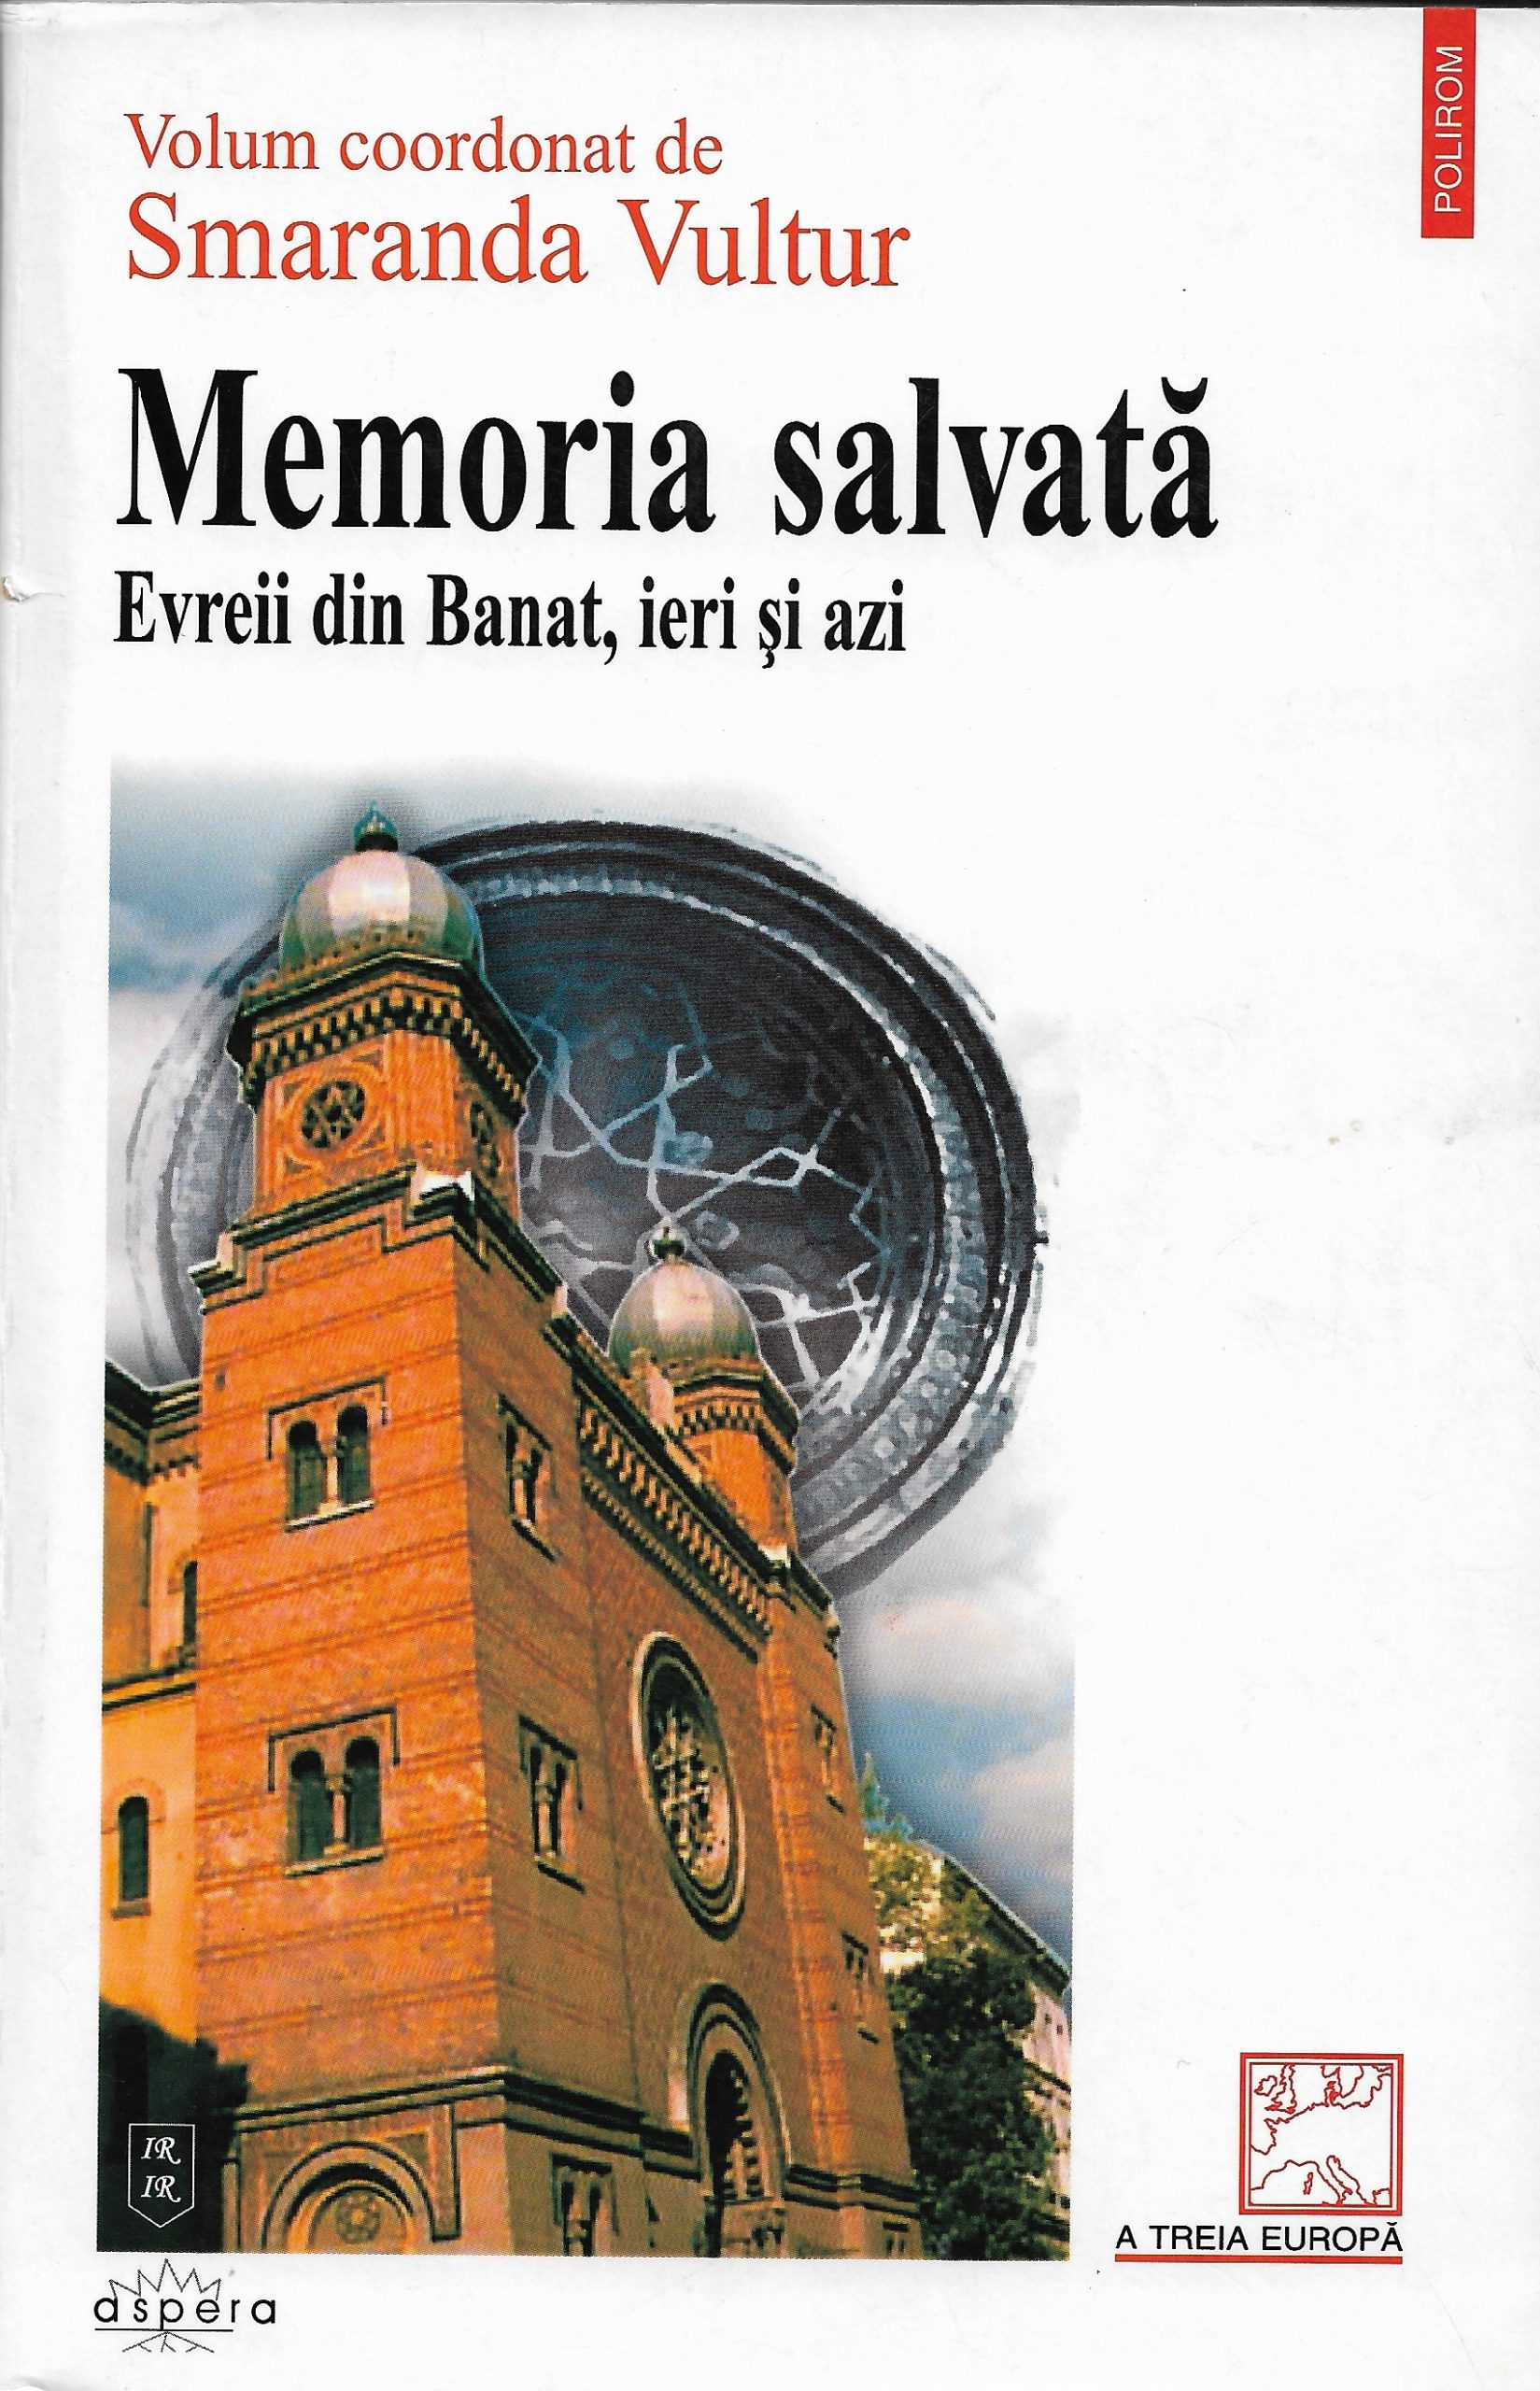 Memoria salvată. Evreii din Banat, ieri şi azi. Volum coordonat de Smaranda Vultur. Editura Polirom, 2002